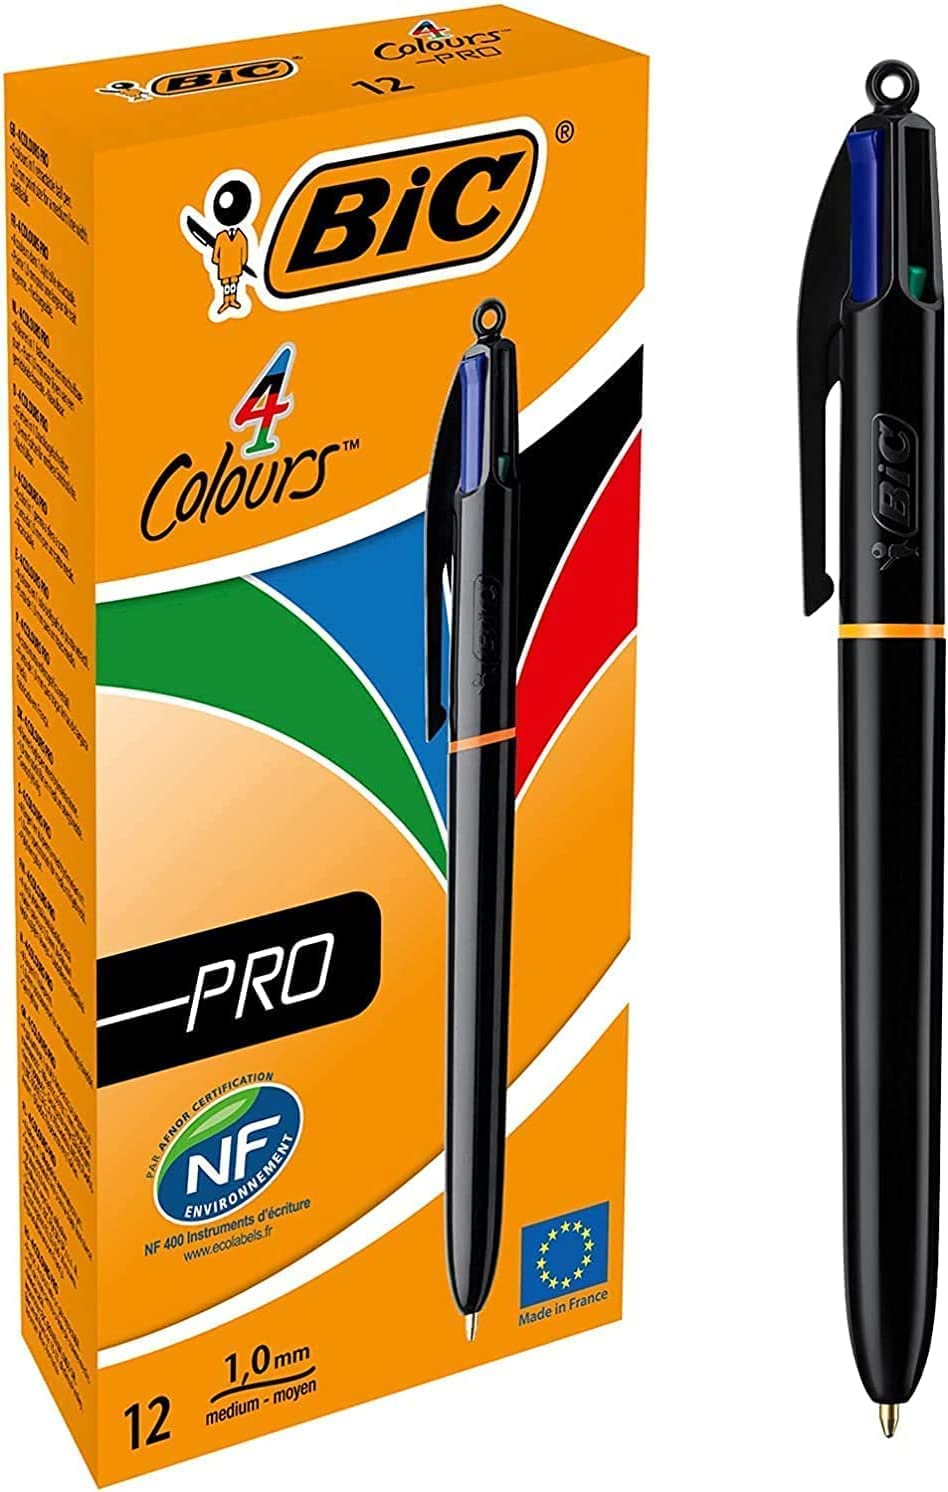 BIC 4 Farben Kugelschreiber Set 4 Colours Pro, mit schwarzem Schaft, 12er Pack, nachfüllbar, Ideal für das Büro, das Home Office oder die Schule